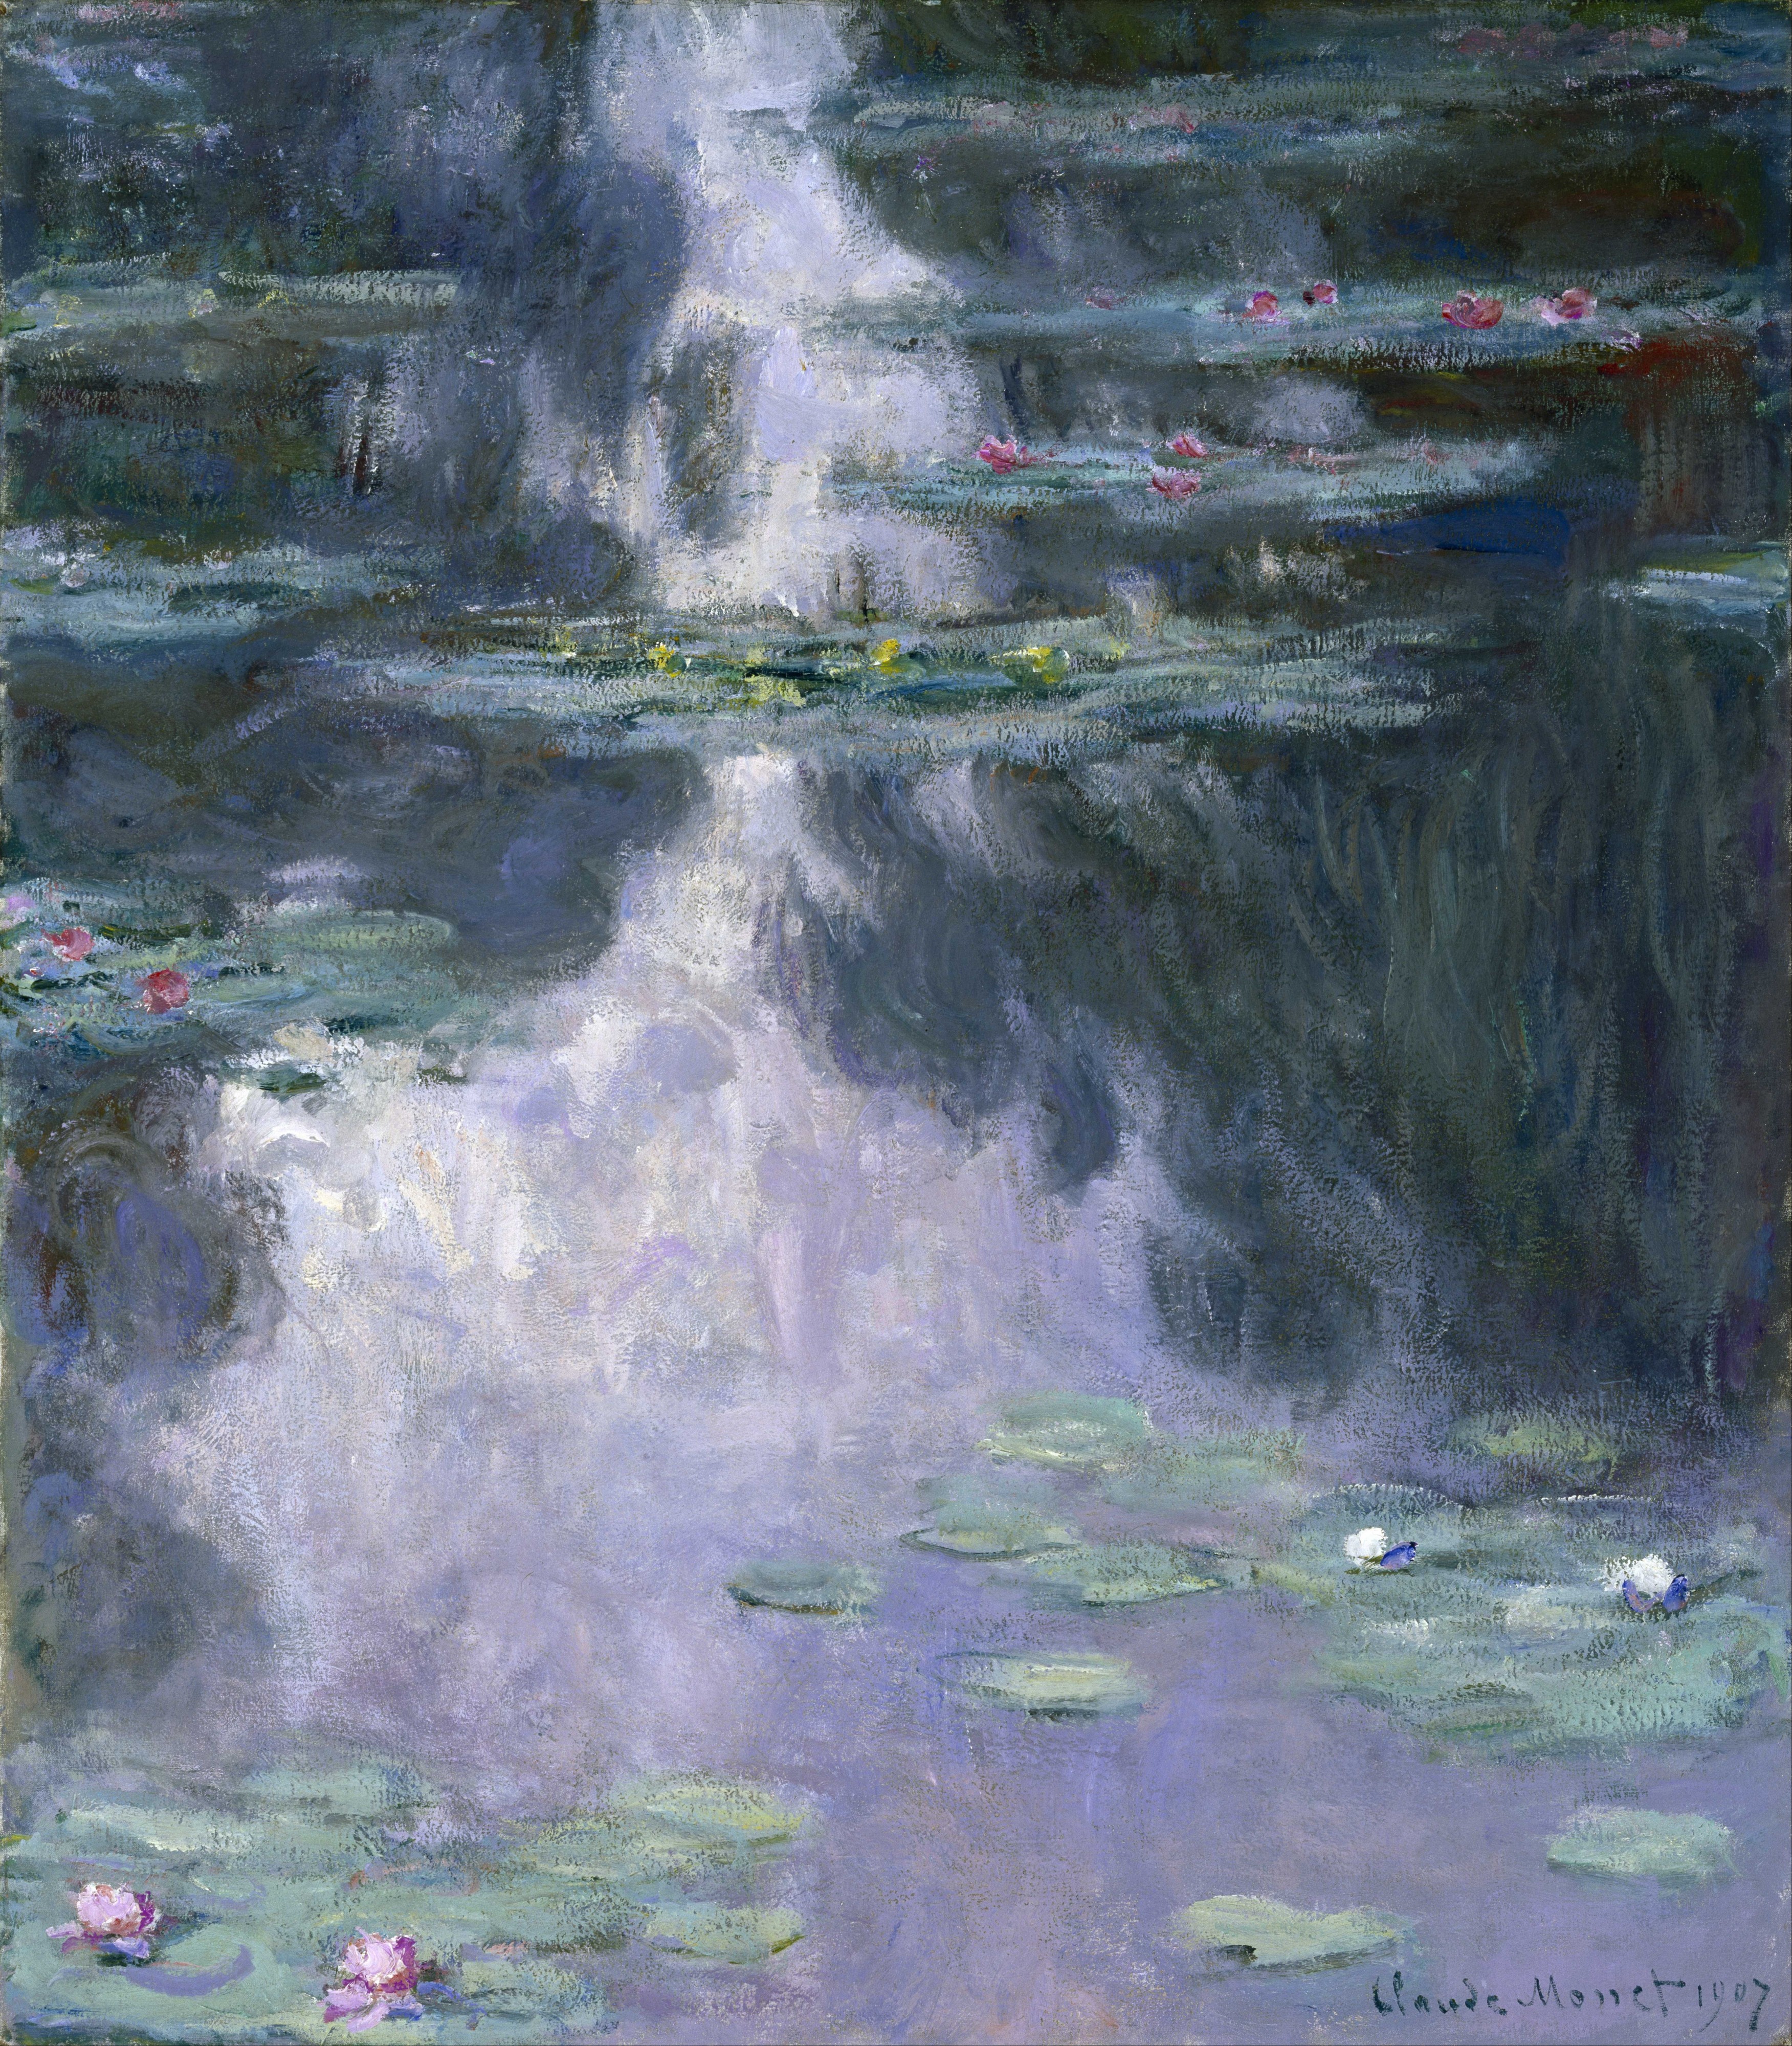 Monet, Claude - Water Lilies (Nymphéas) - Google Art Project